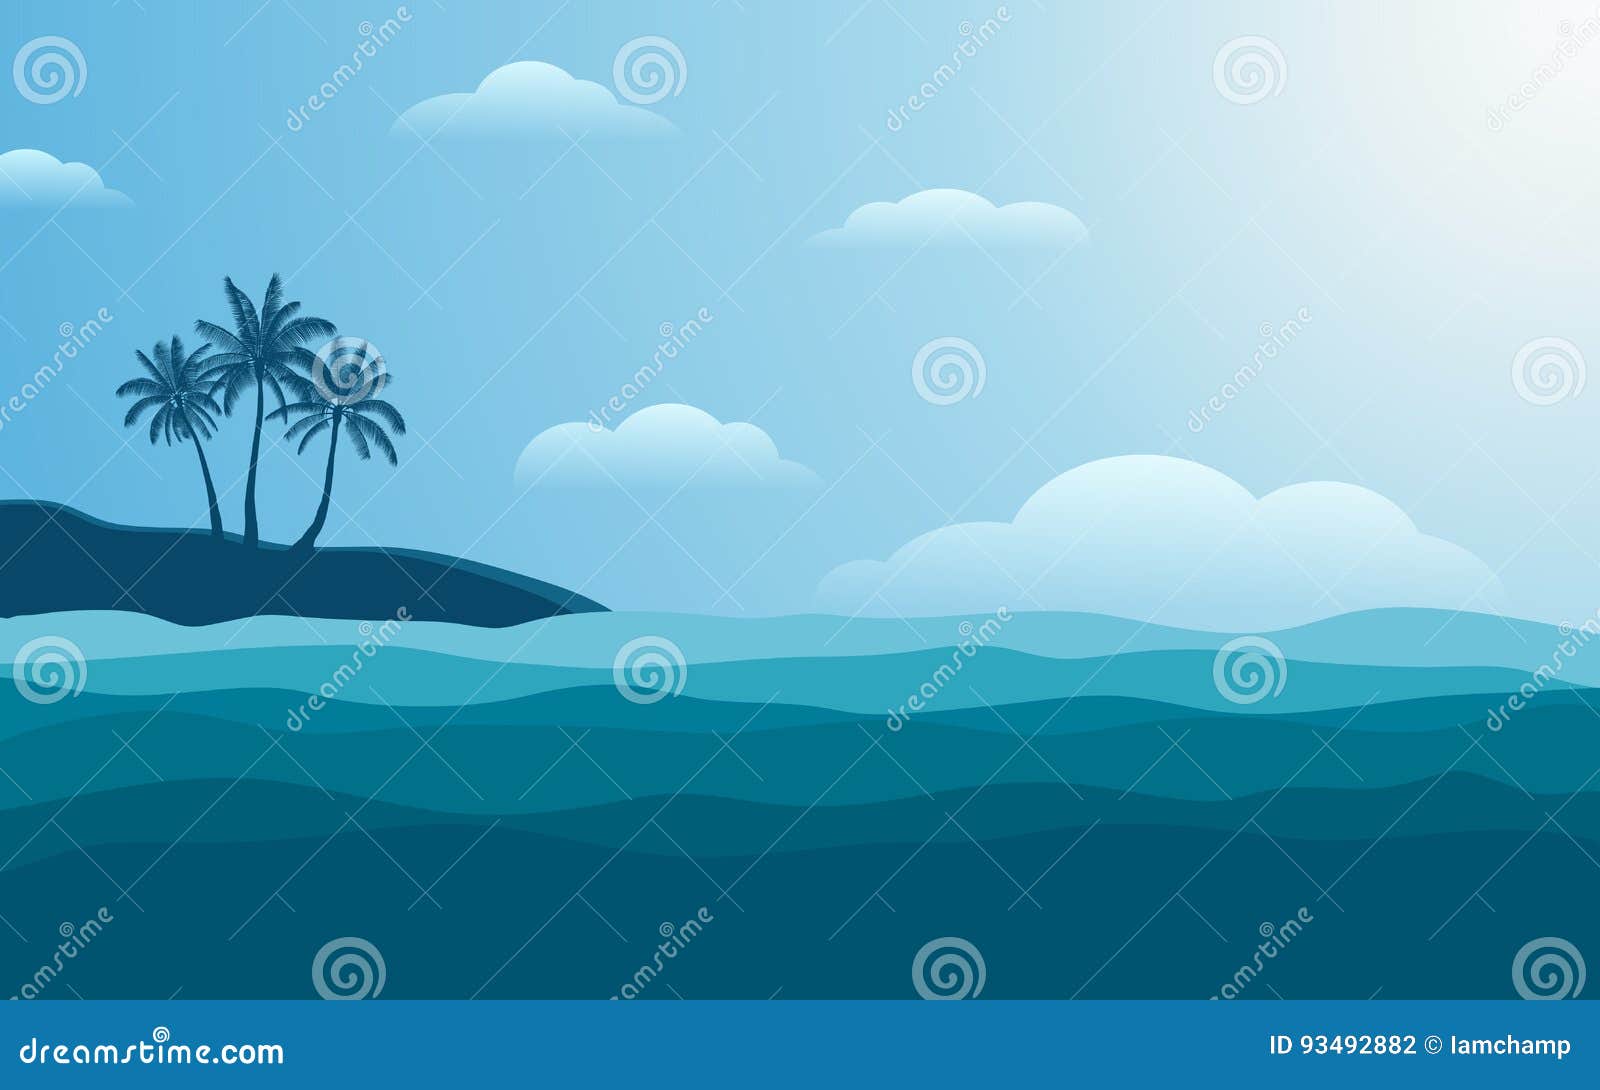 Konturpalmträd på kust på middagen med blåttfärghimmel i plan symbolsdesignbakgrund